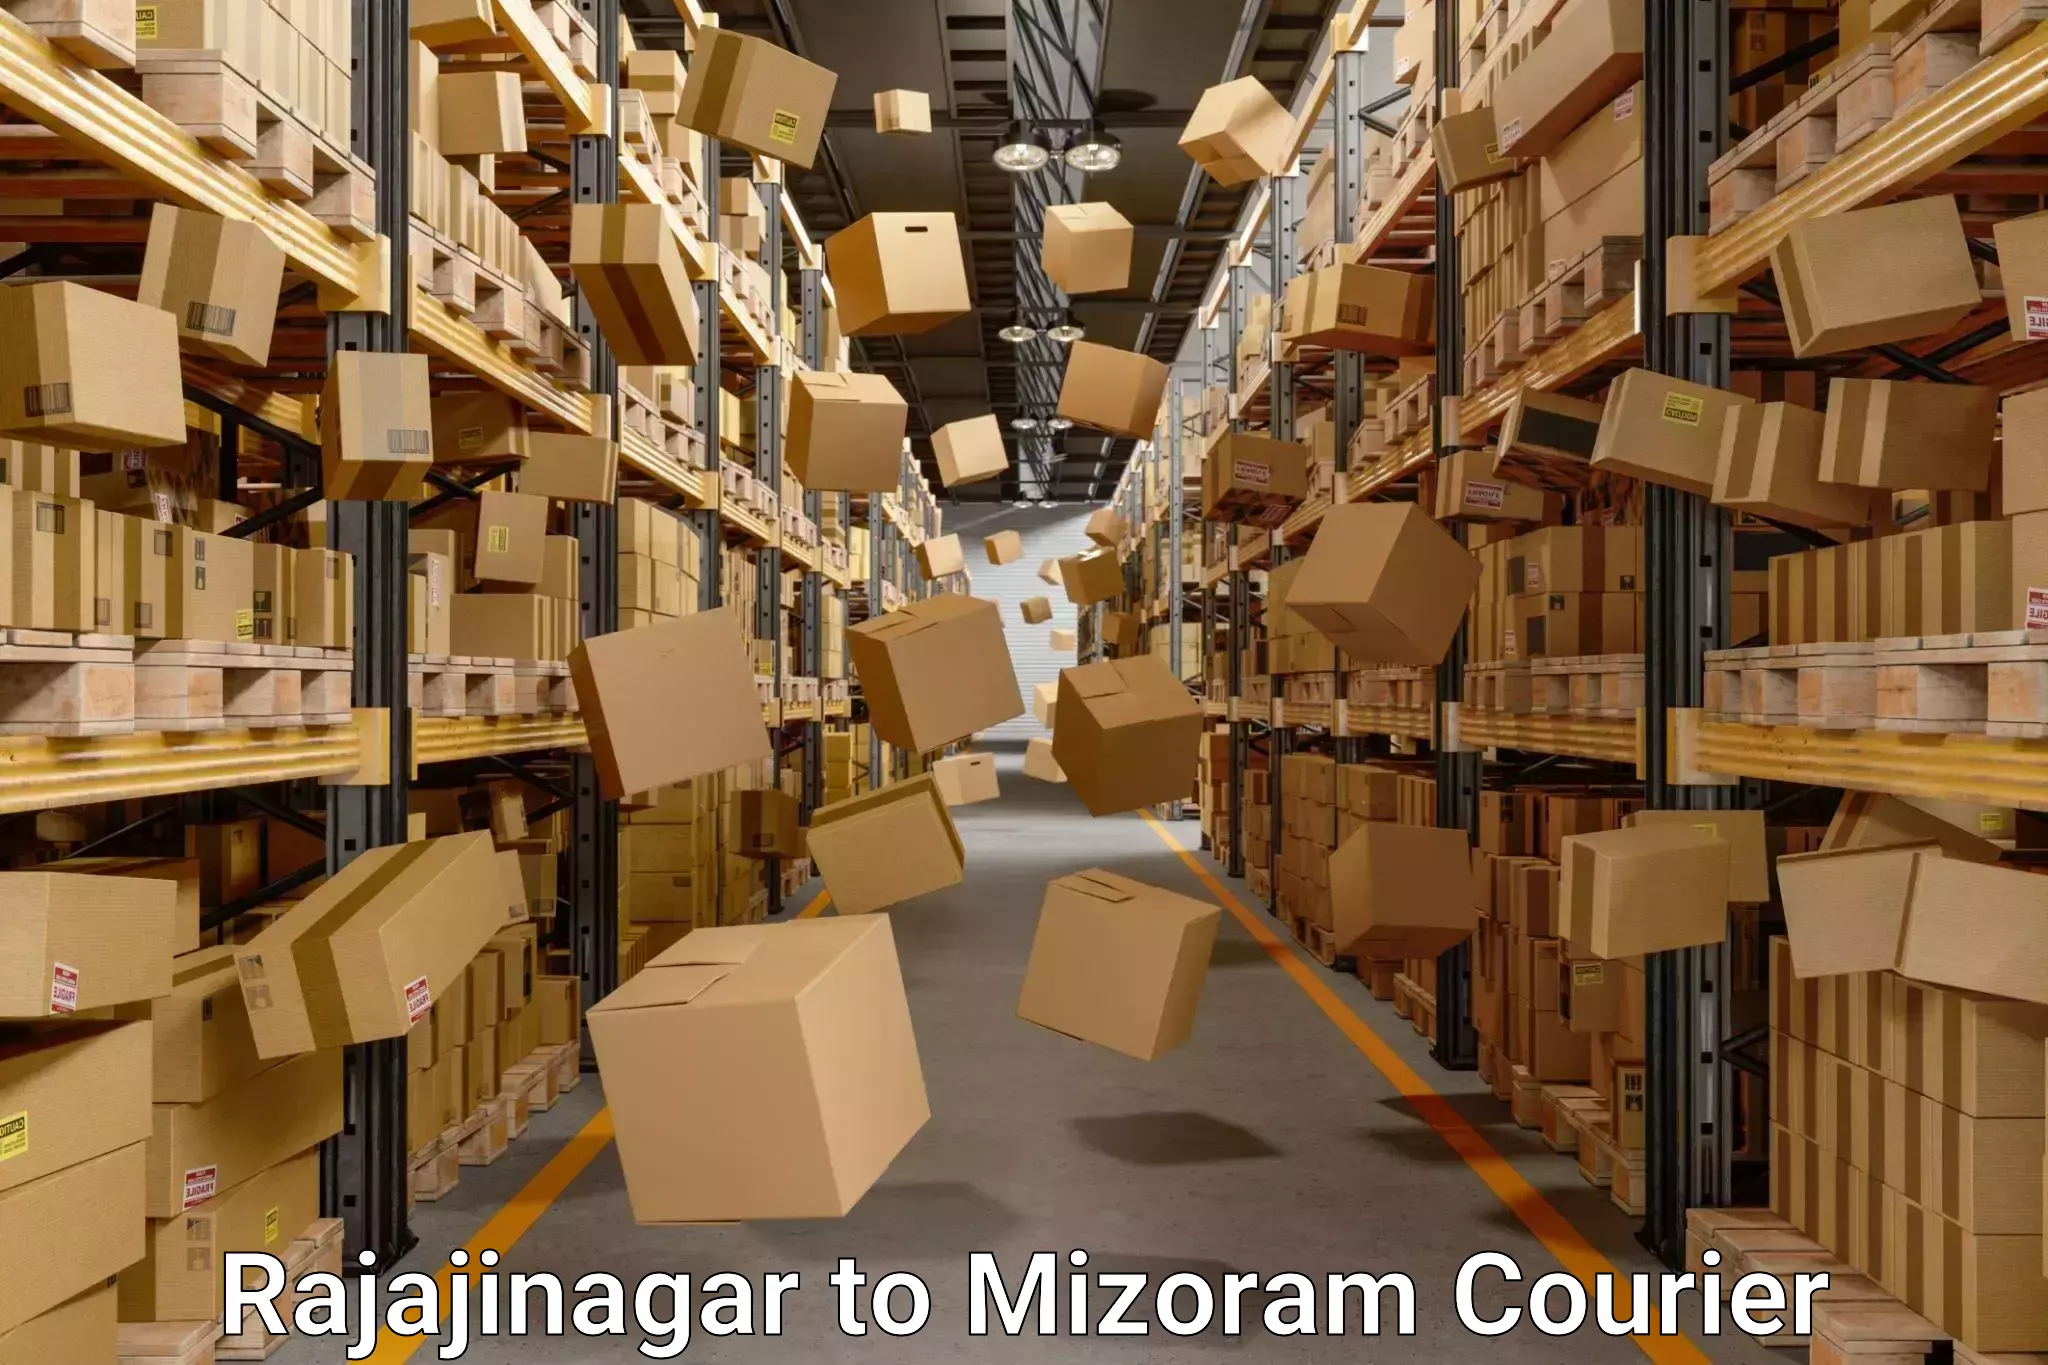 Moving and storage services Rajajinagar to Mizoram